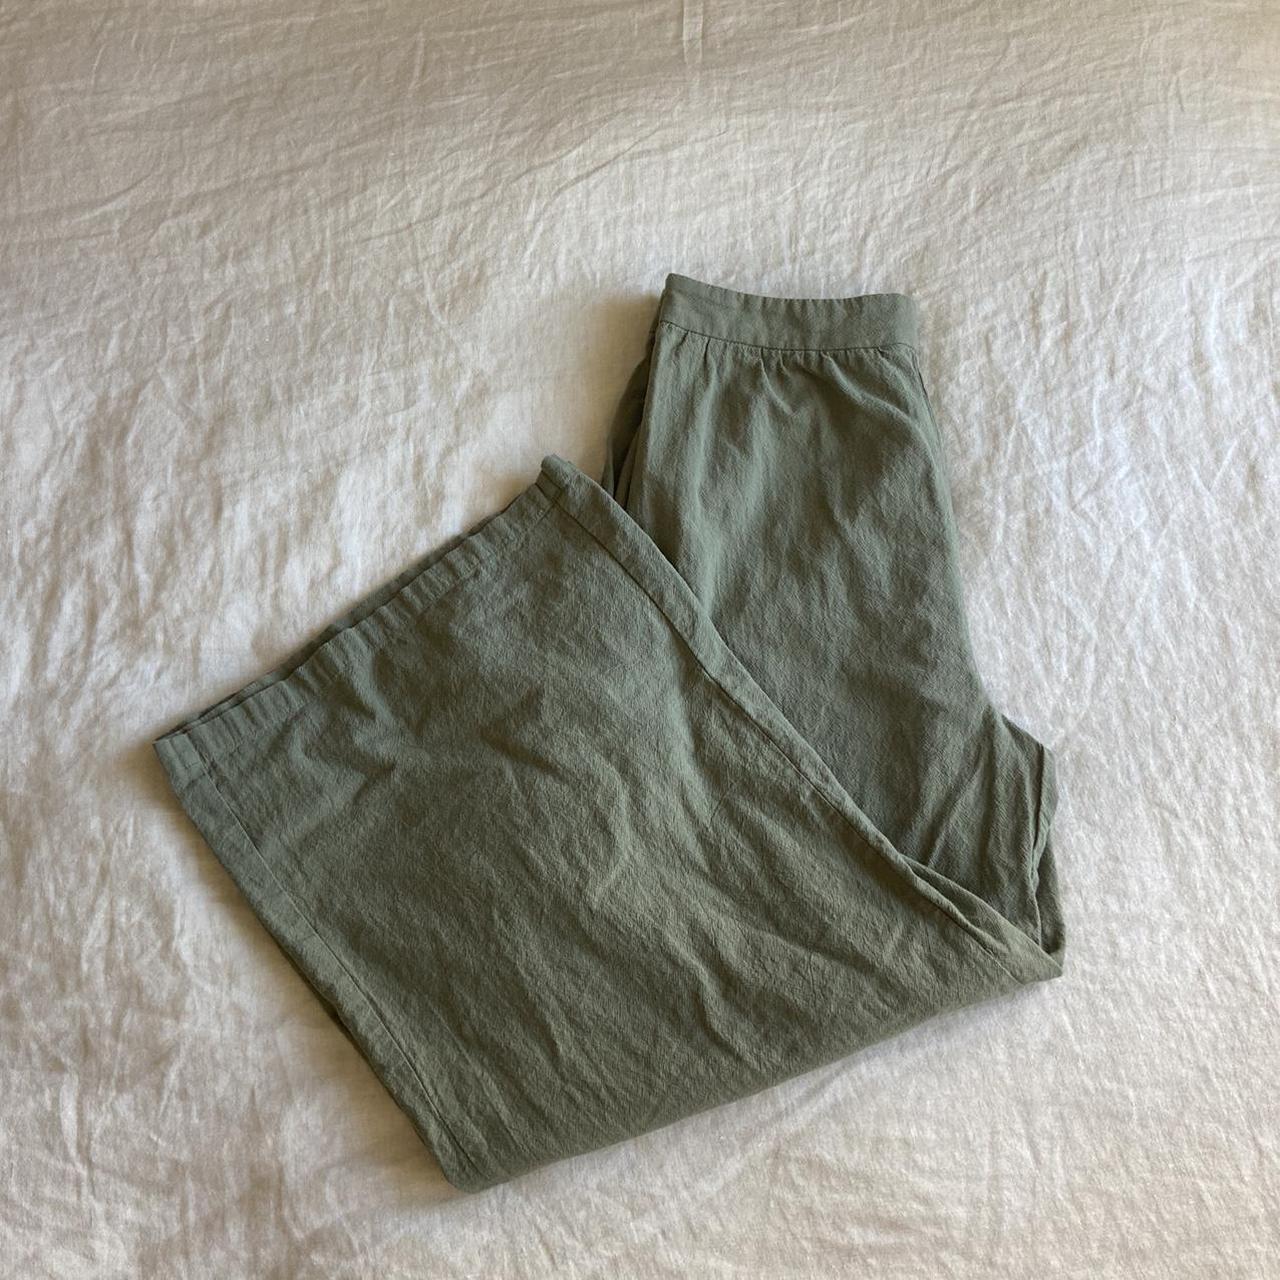 Olive Green Linen Pants Size L #linen #pants... - Depop